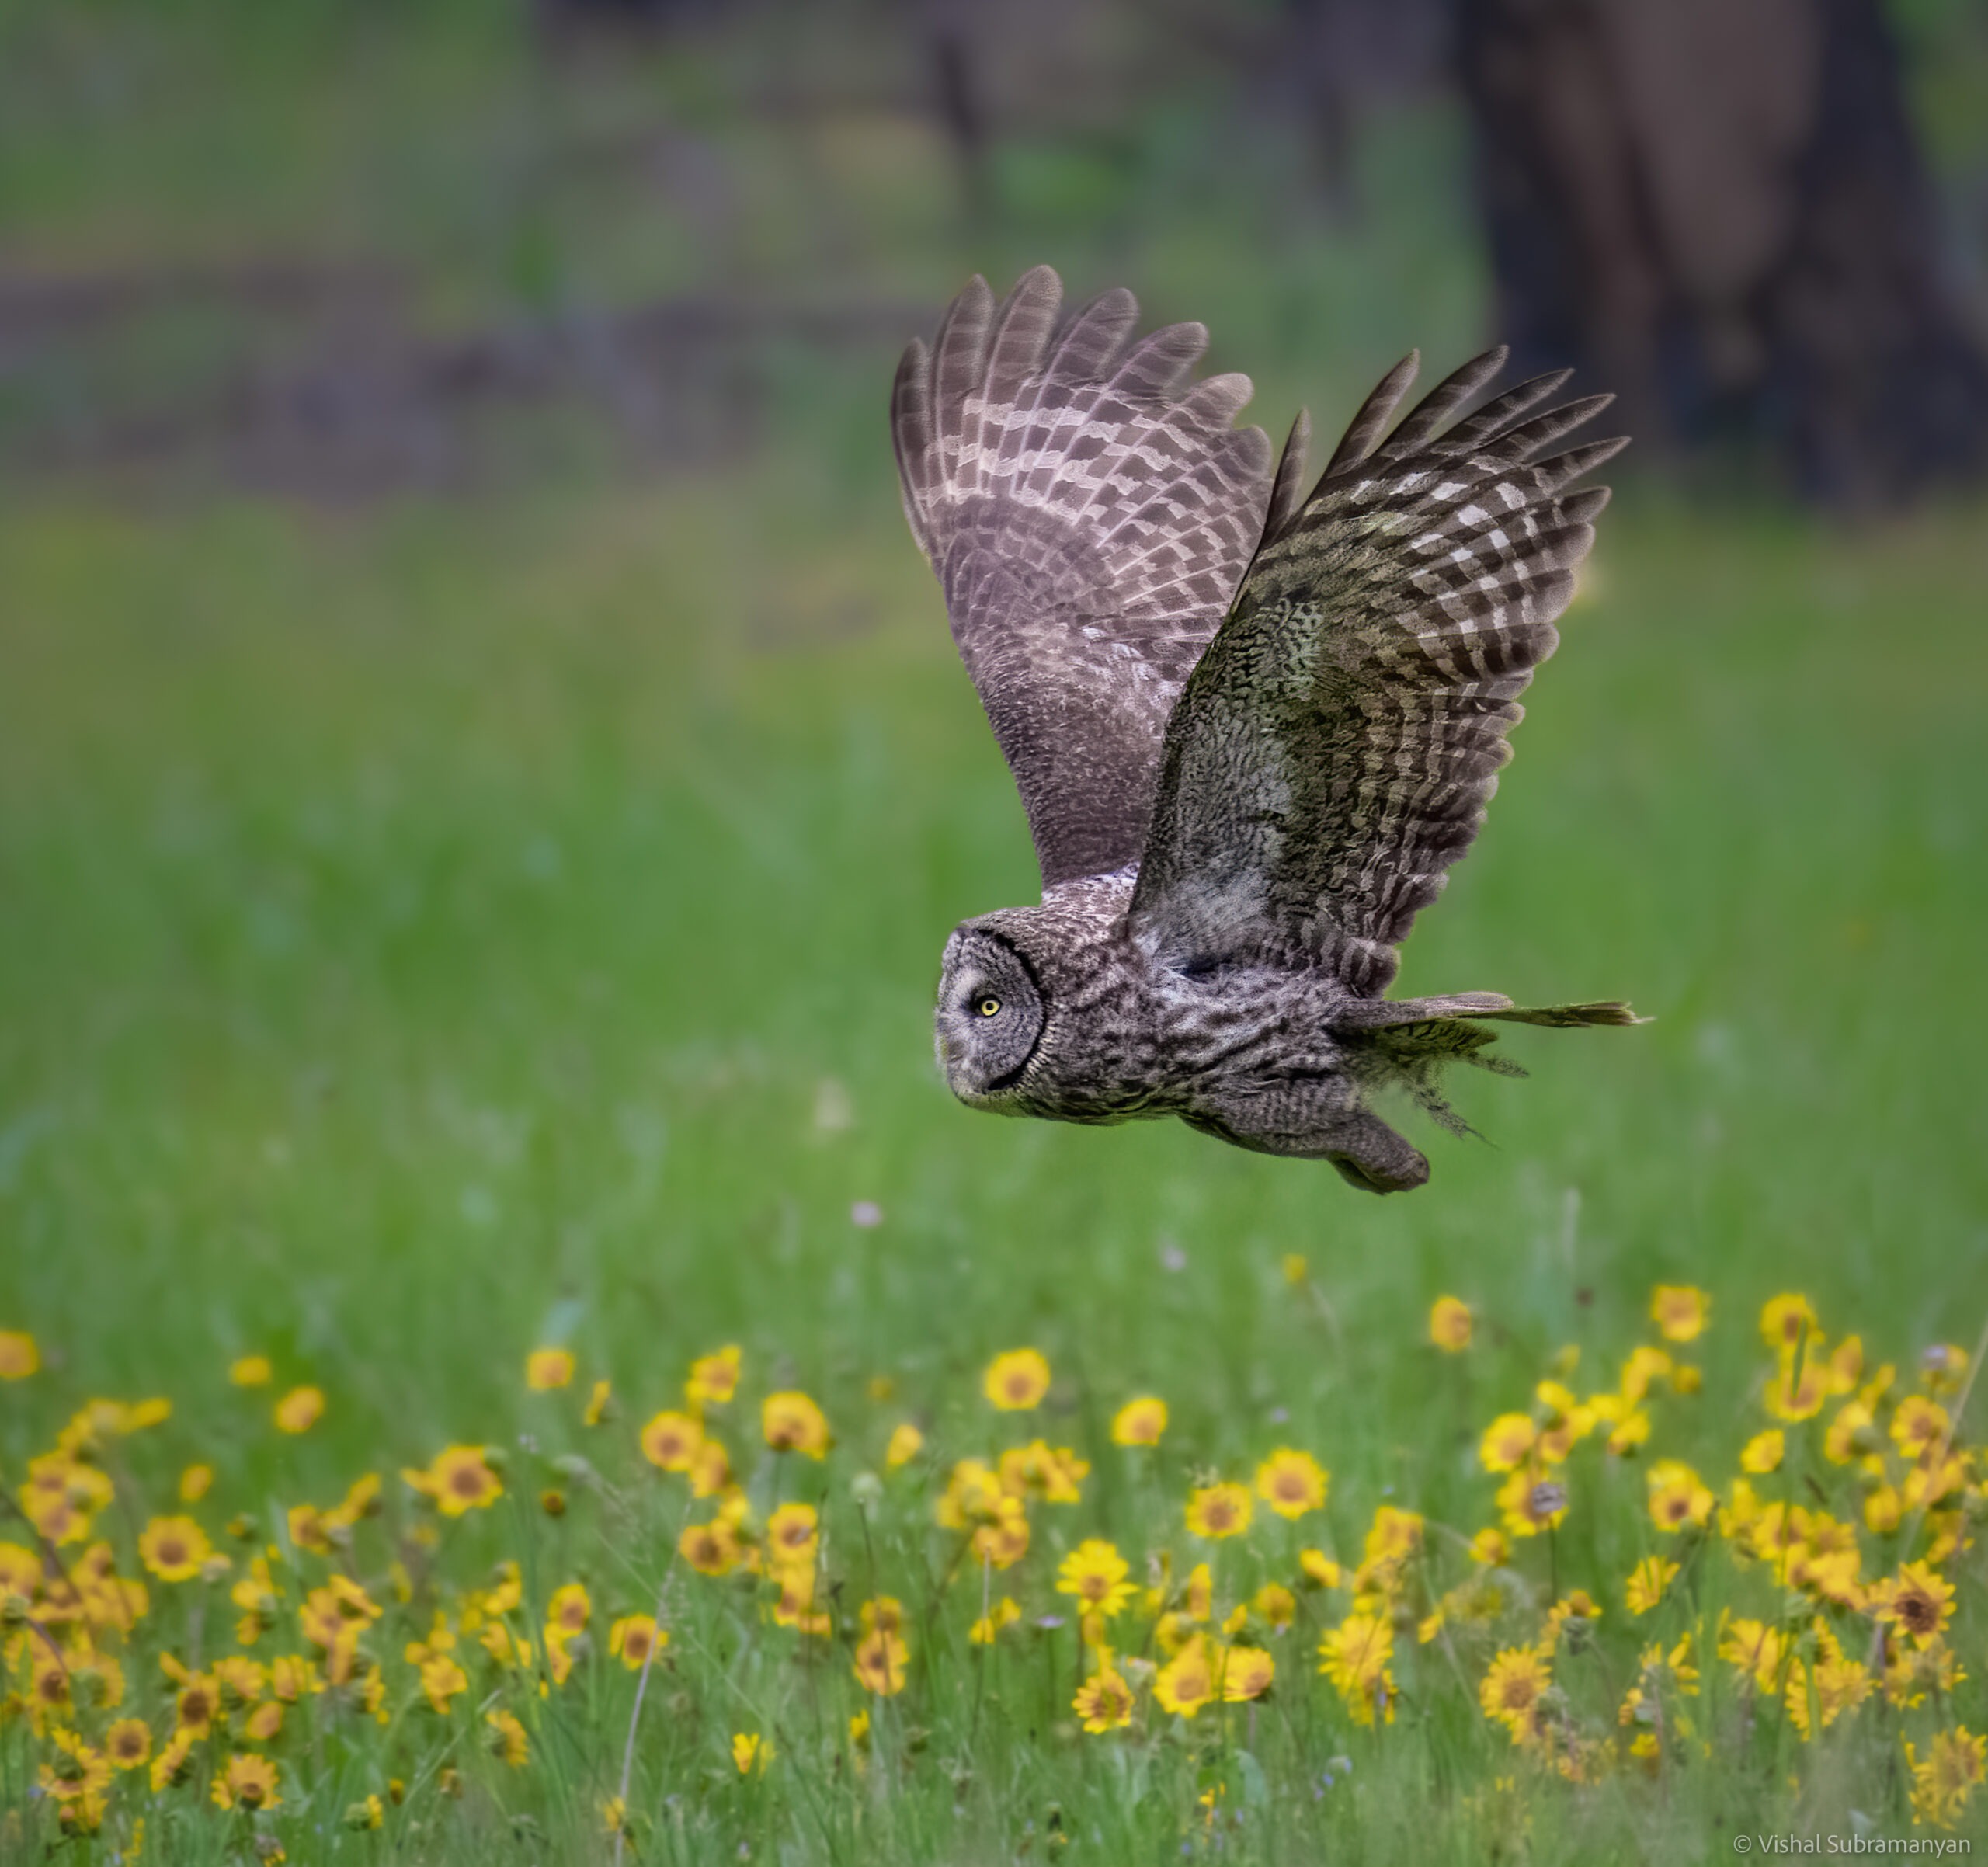 Great gray owl in flight across meadow, taken in July 2021